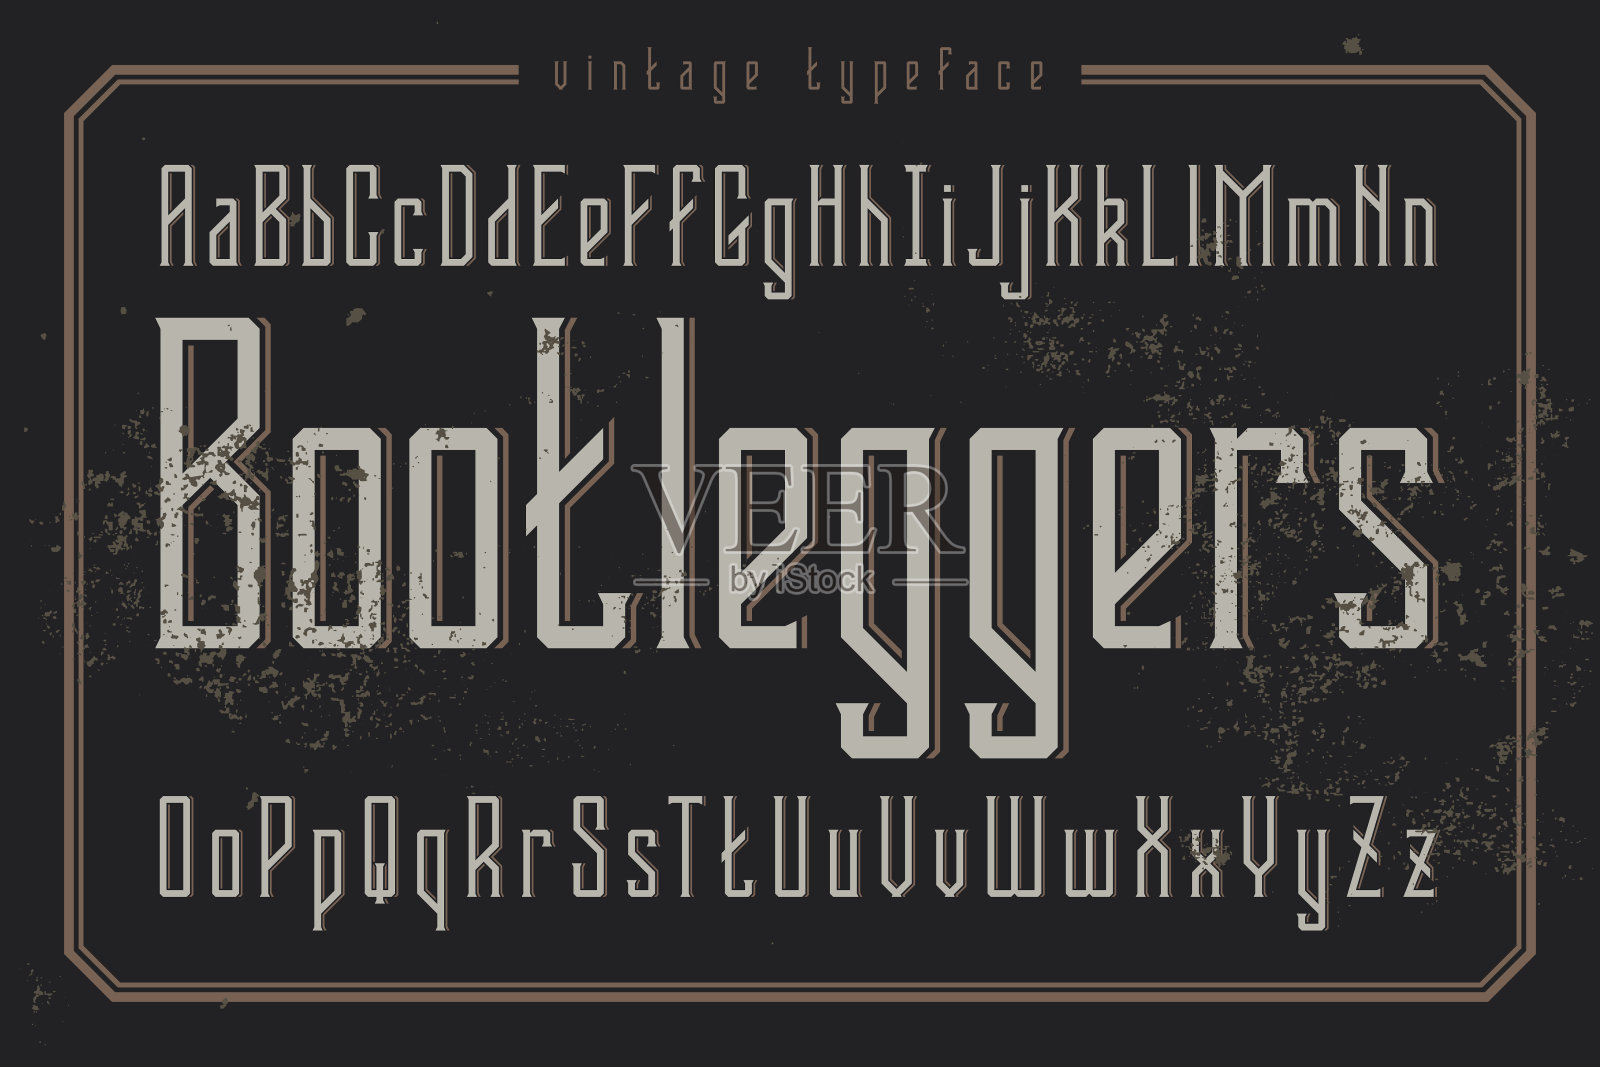 古典风格的字体。复古字体命名为“Bootleggers”。插画图片素材